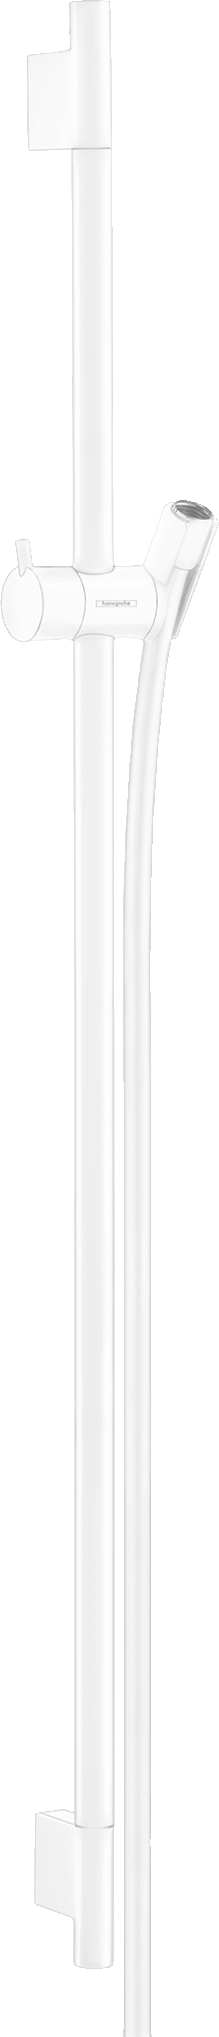 Unica Shower bar S Puro 90 cm with Isiflex shower hose 160 cm